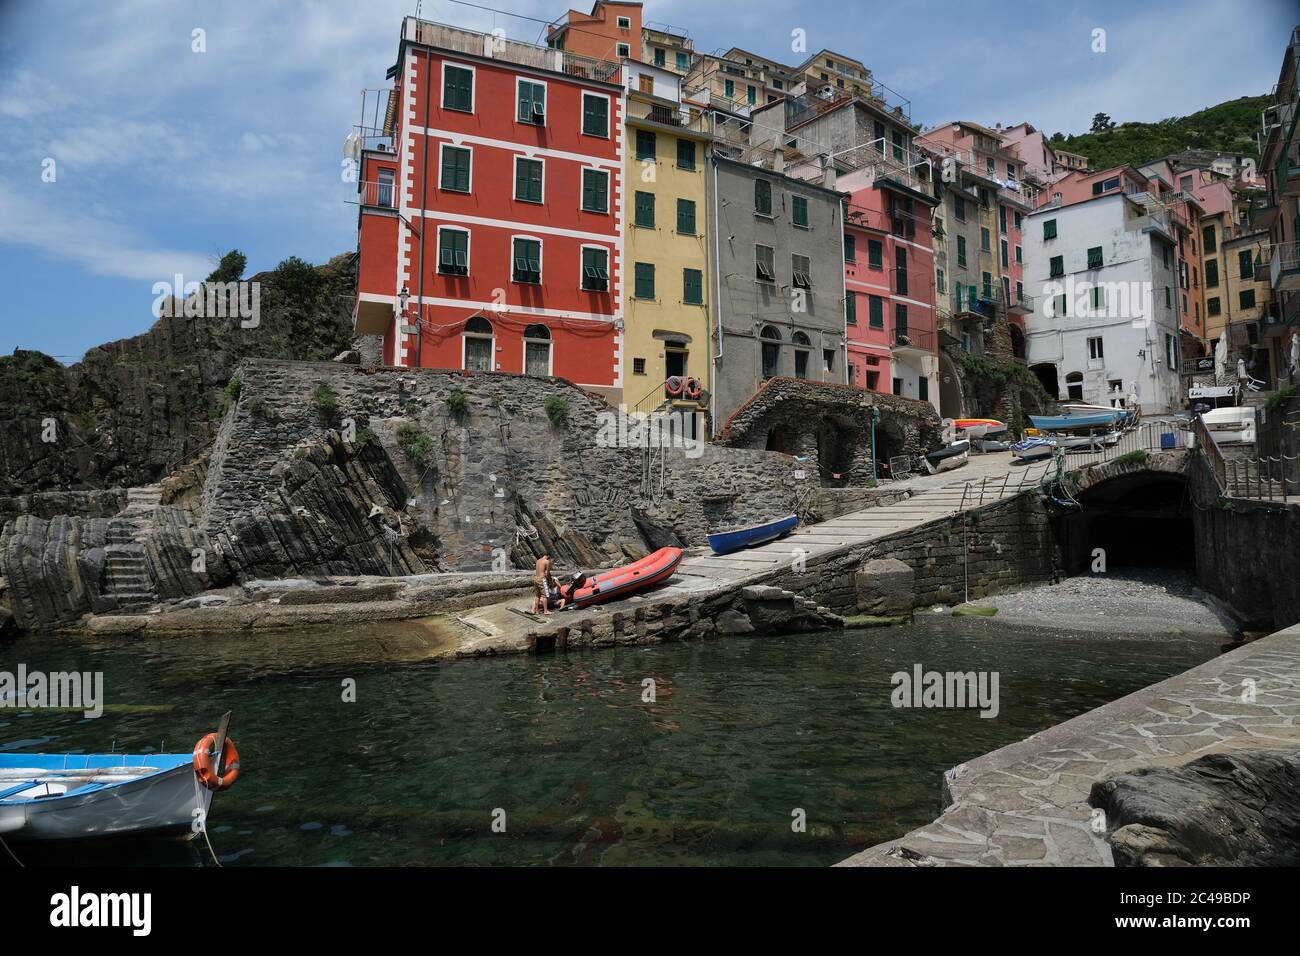 Riomaggiore, Cinque Terre, Ligurien. Ca. 2020. Farbige Häuser am Meer. Berühmtes Touristenziel. Coronavirus-Periode. Lizenzfreie Stock-Fotos Stockfoto